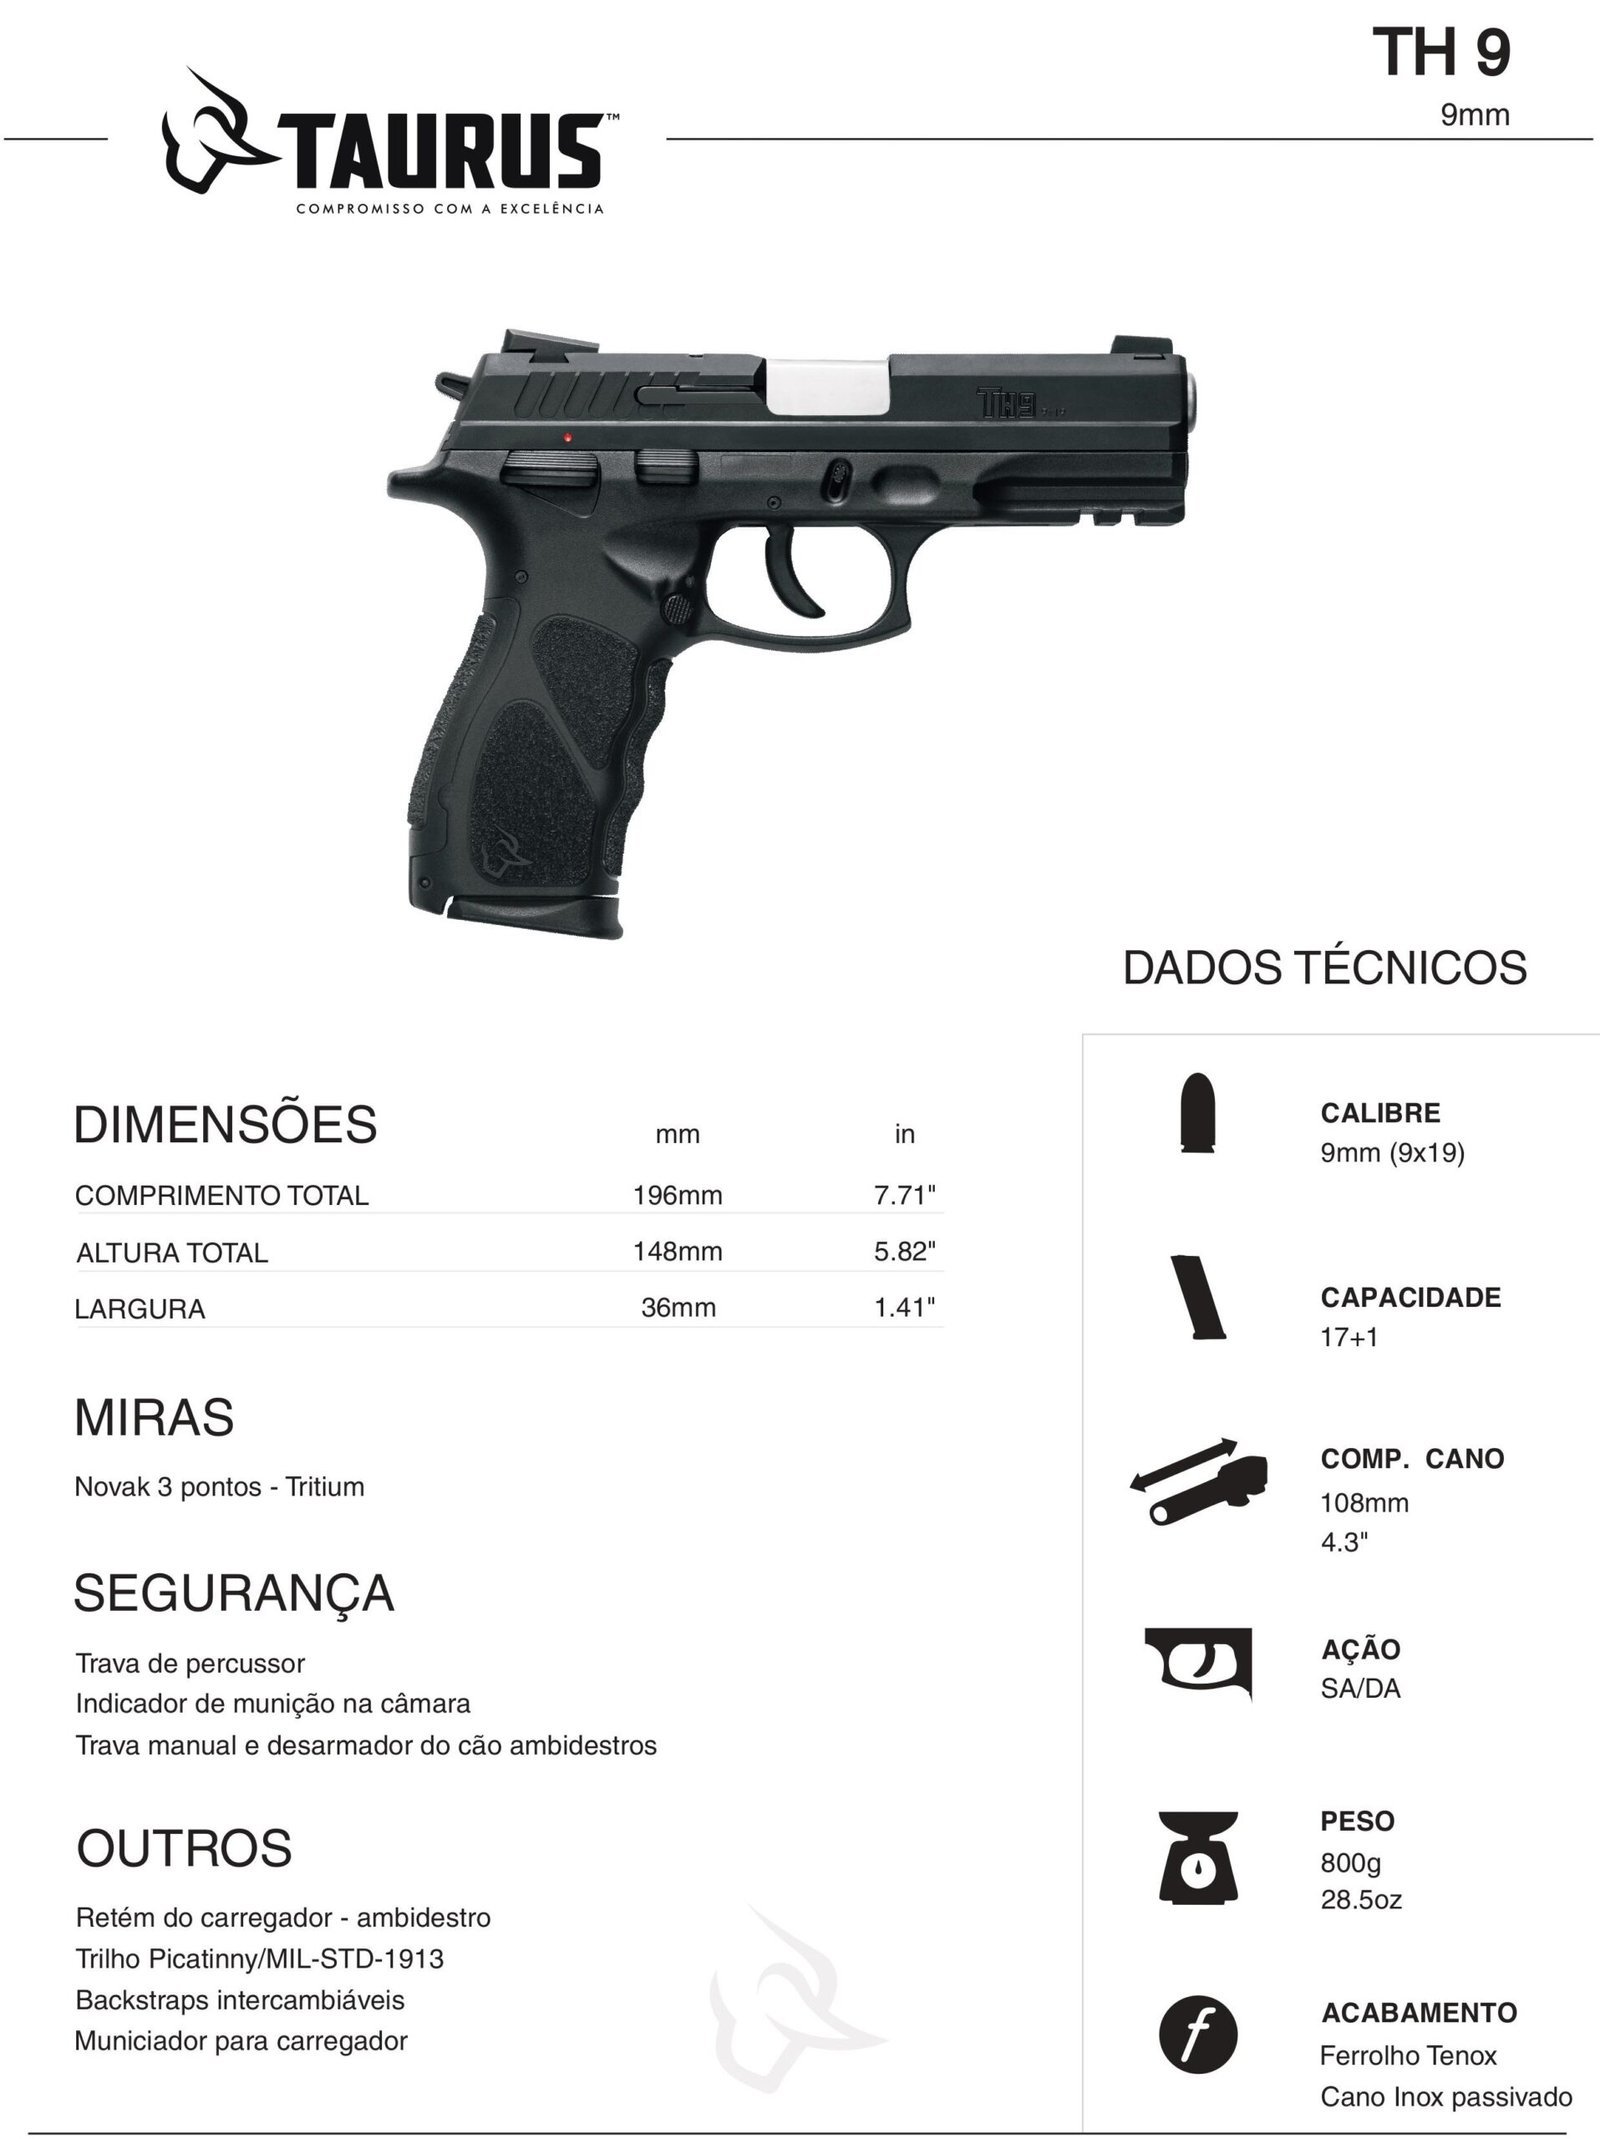 Pistola Taurus TH9, comprar armas, venda de armas, comprando arma, arma no paraguai, armas no paraguai